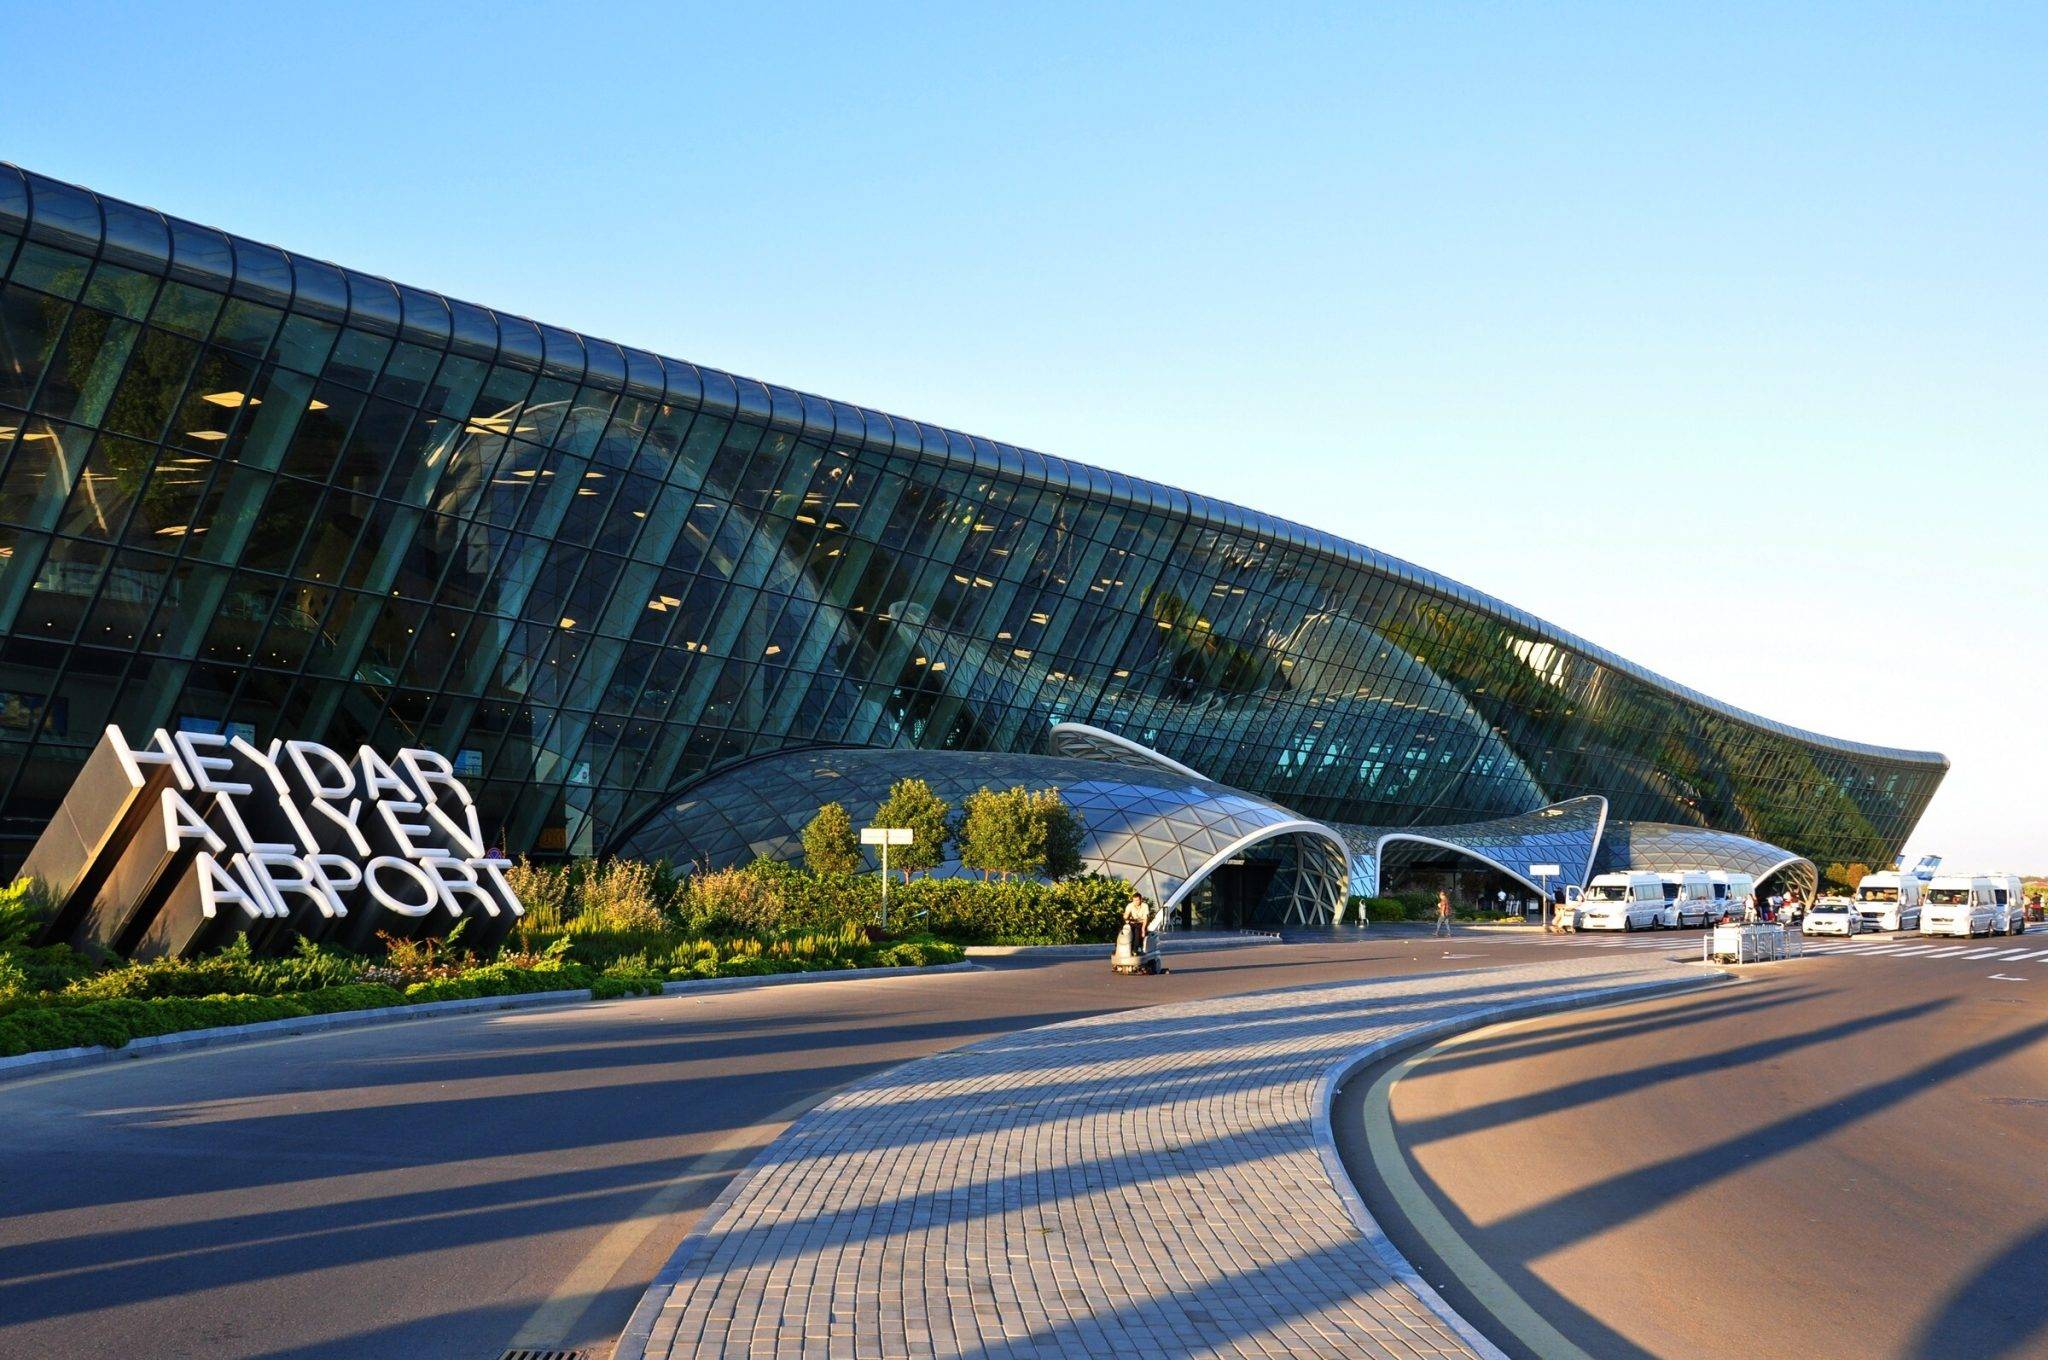 Международный аэропорт гейдар алиев (г. баку, азербайджан) - адрес, схема проезда, общая информация, терминалы и справочные телефоны